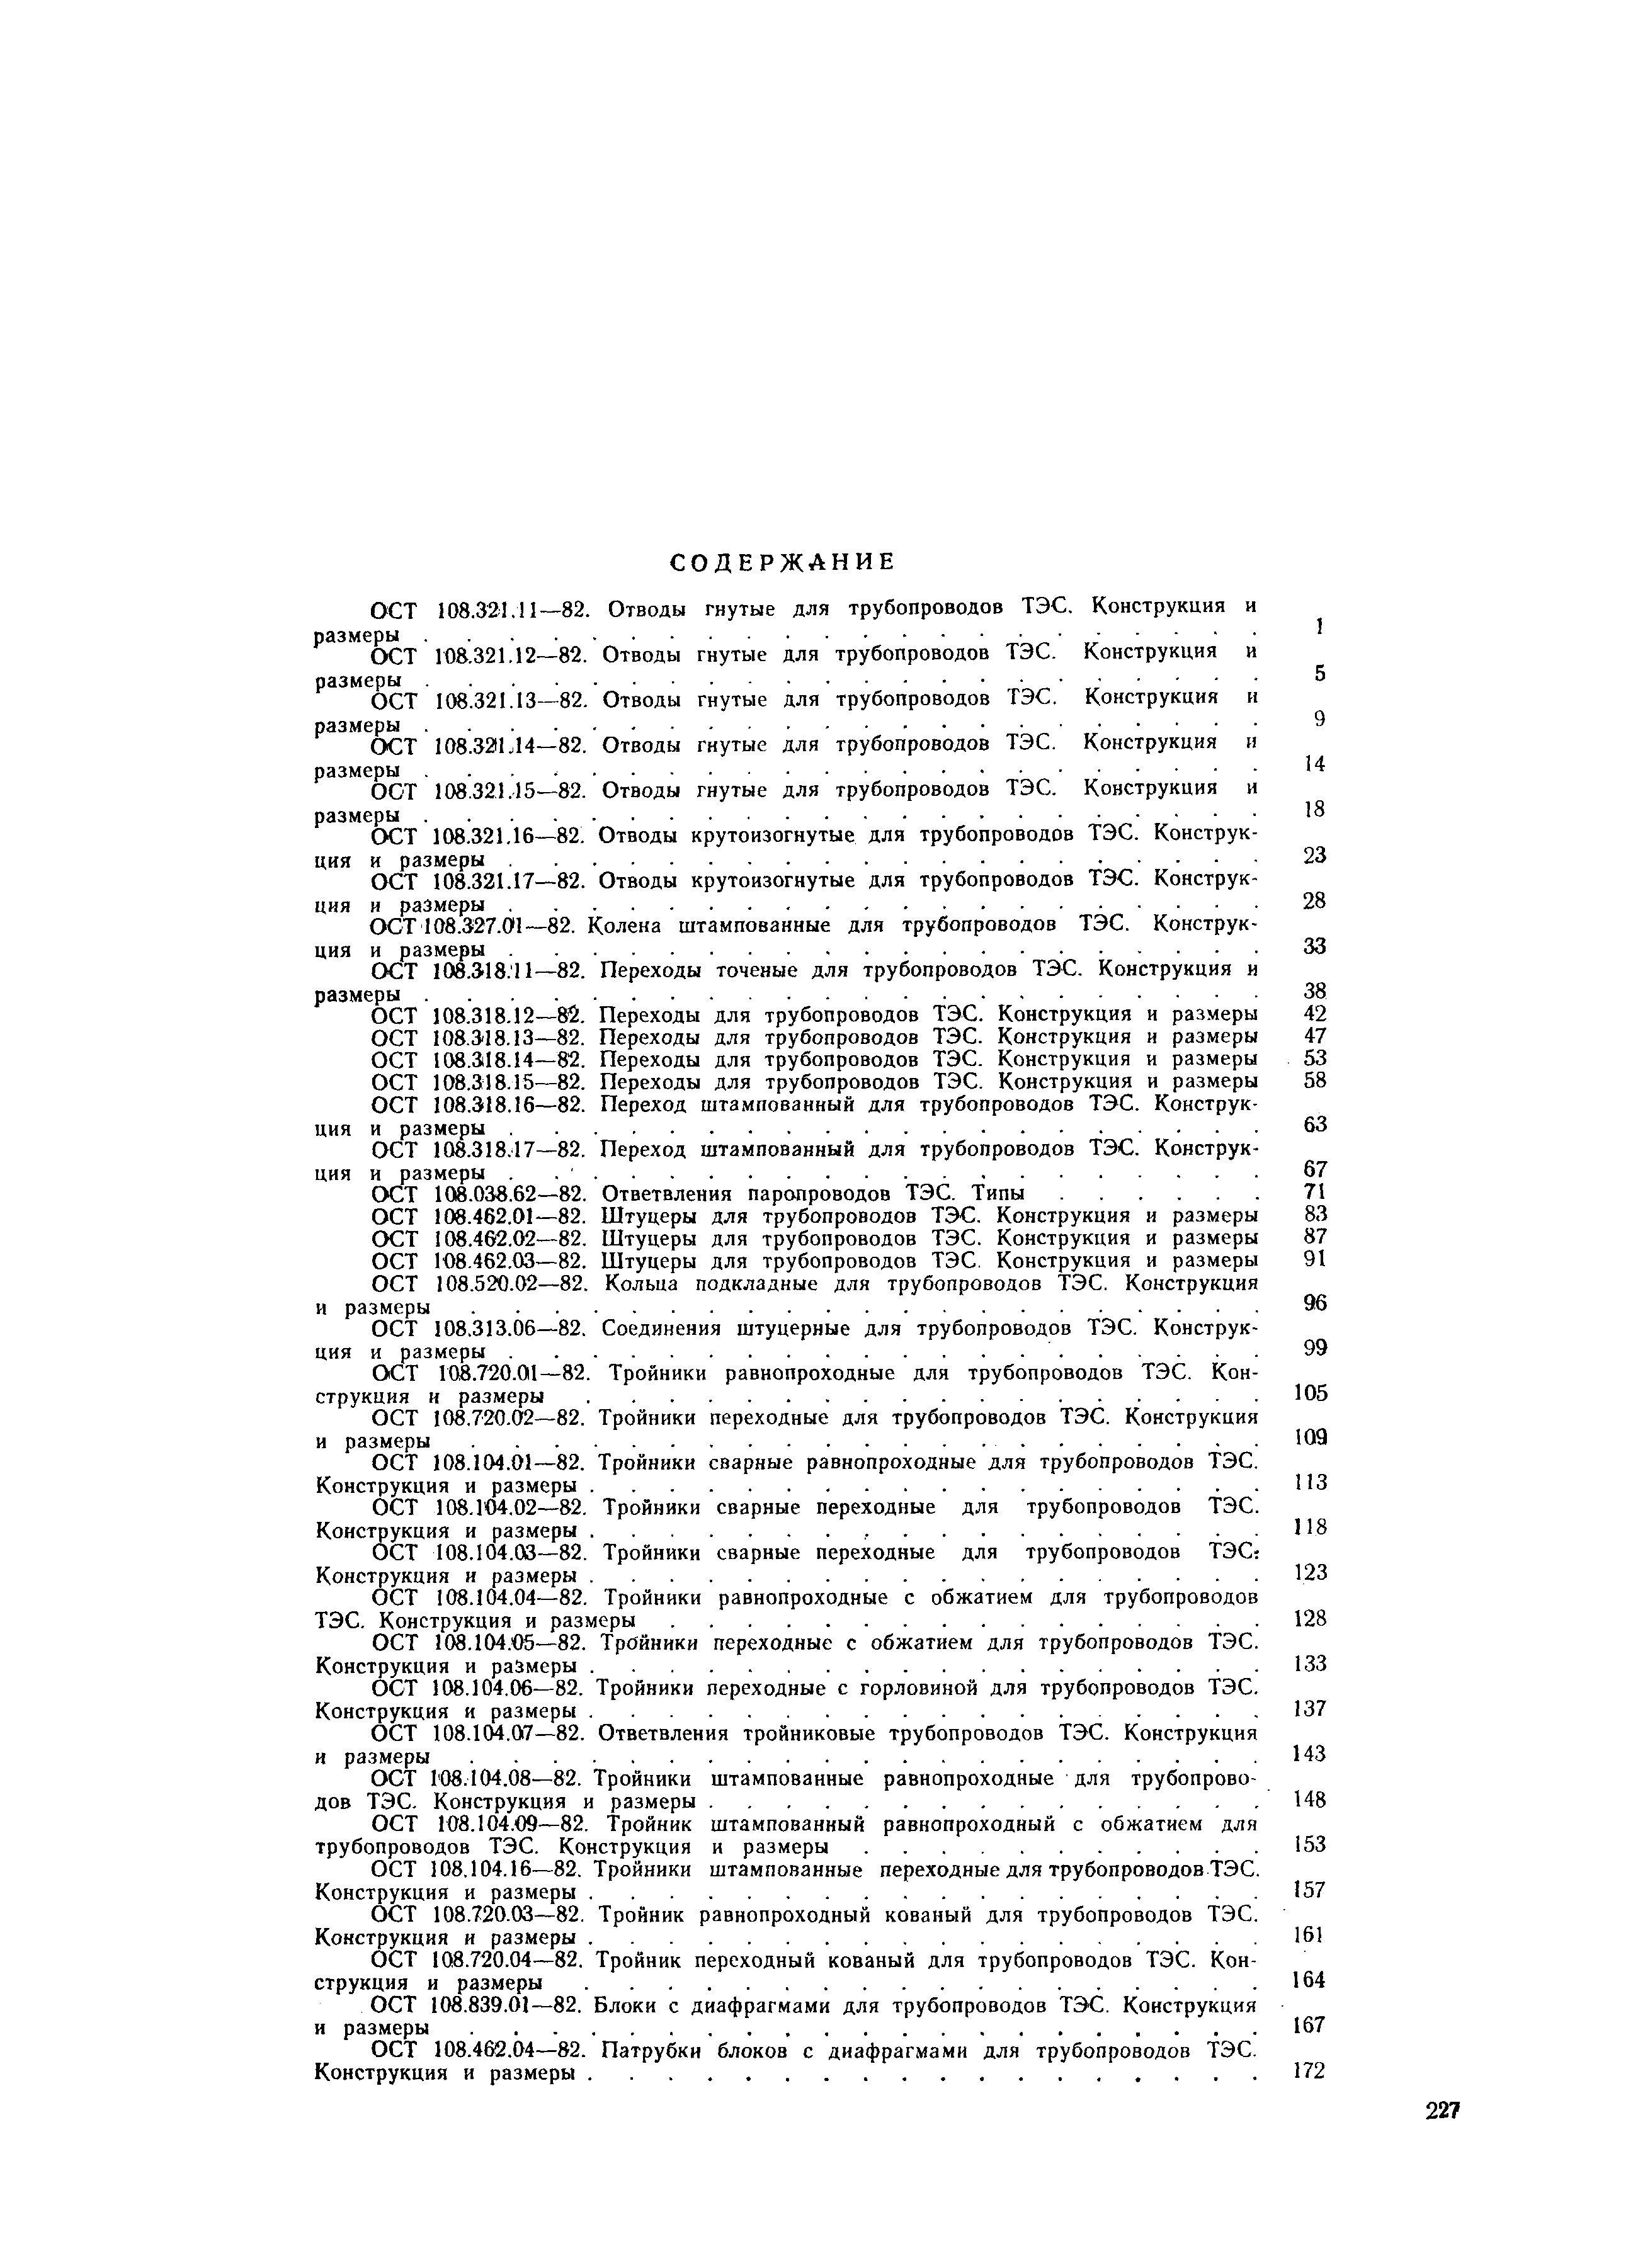 ОСТ 108.462.01-82